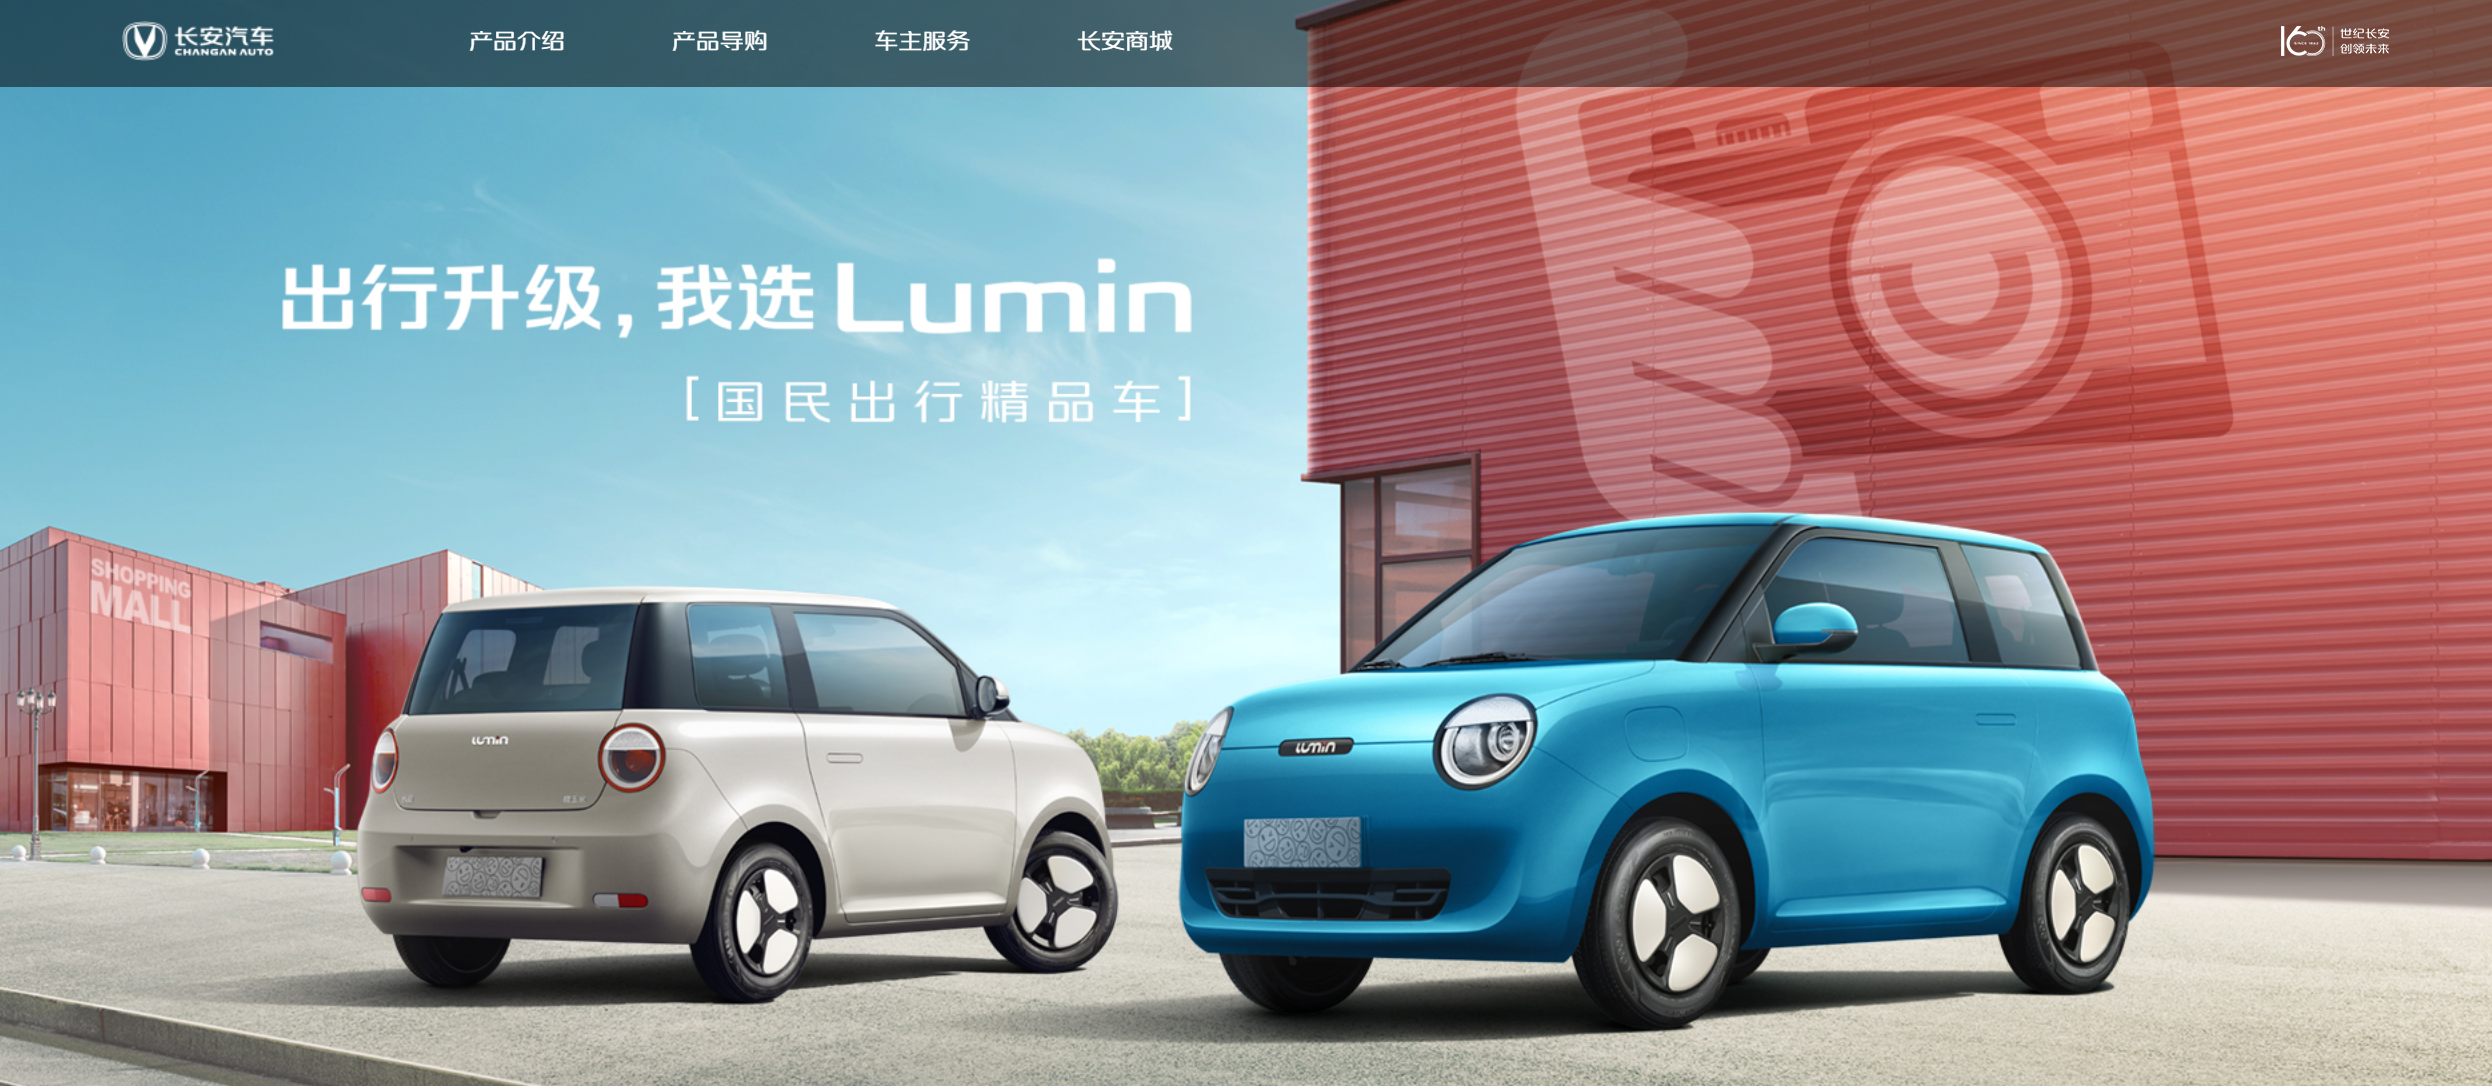 長安Lumin官方平臺正式上線,新車將于6月上市發布